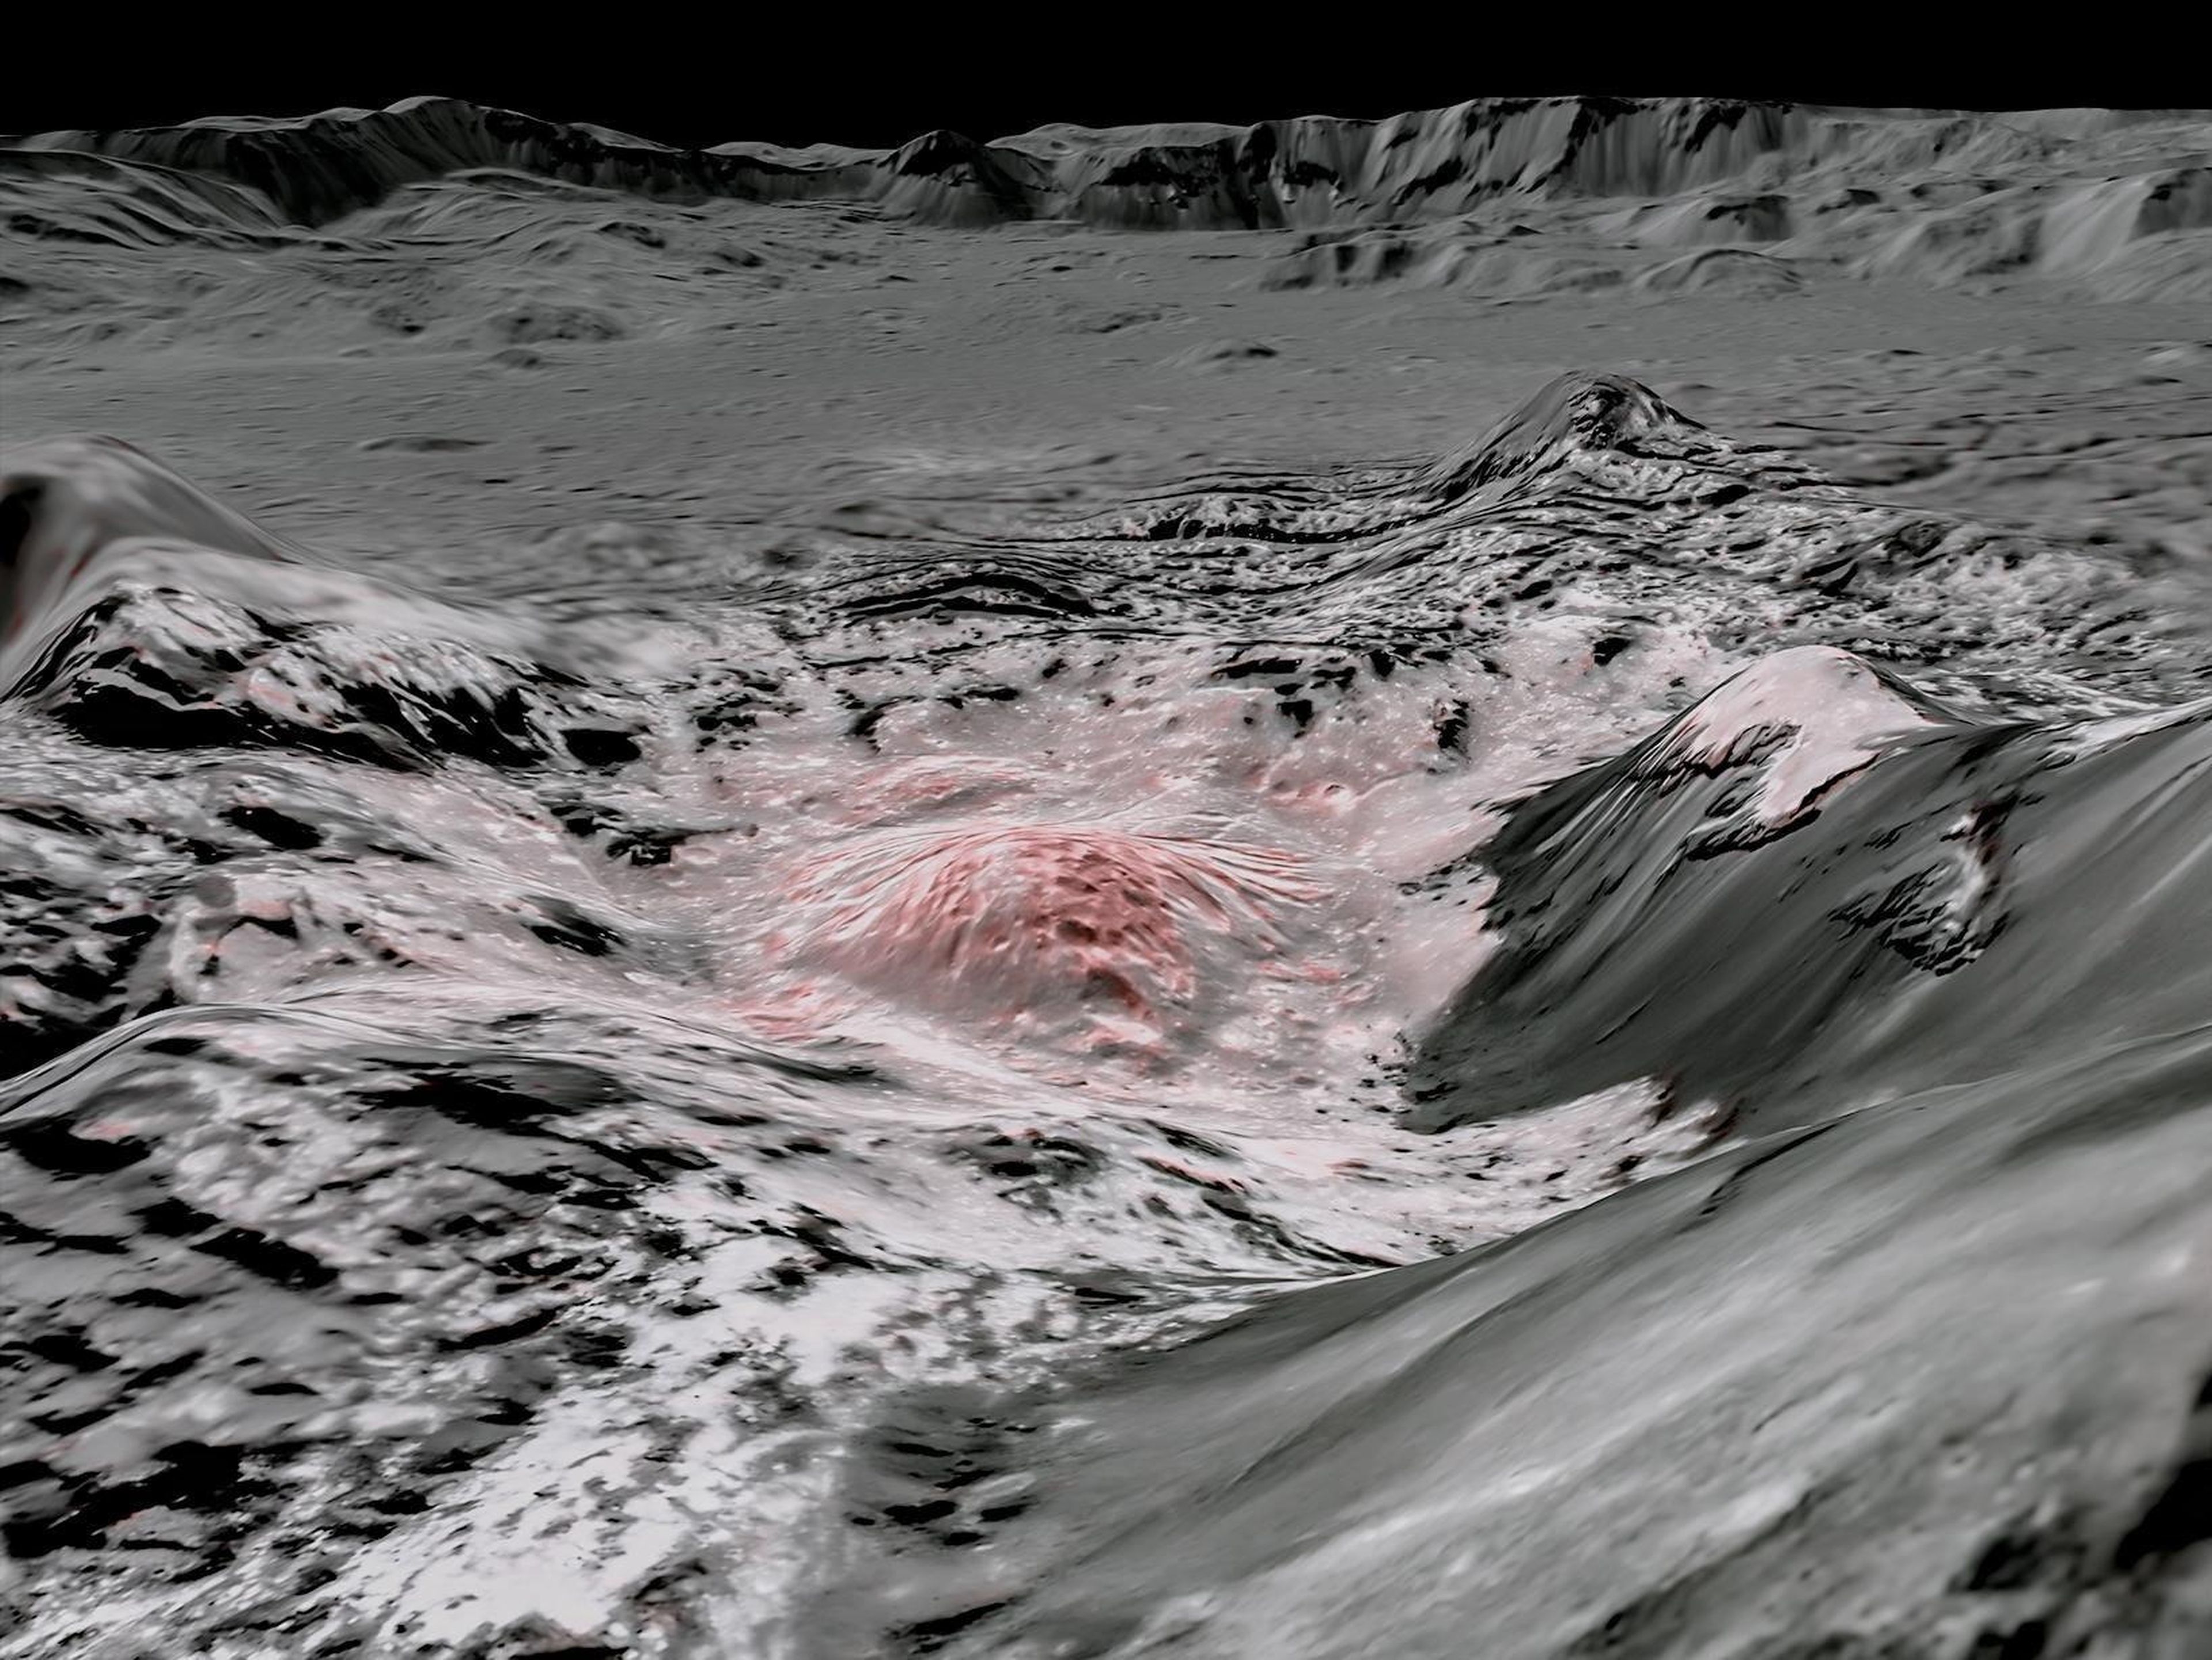 La nave espacial Dawn de la NASA capturó imágenes en longitudes de onda visibles e infrarrojas, que se combinaron para crear esta vista en falso color de la corteza salada en Ceres.